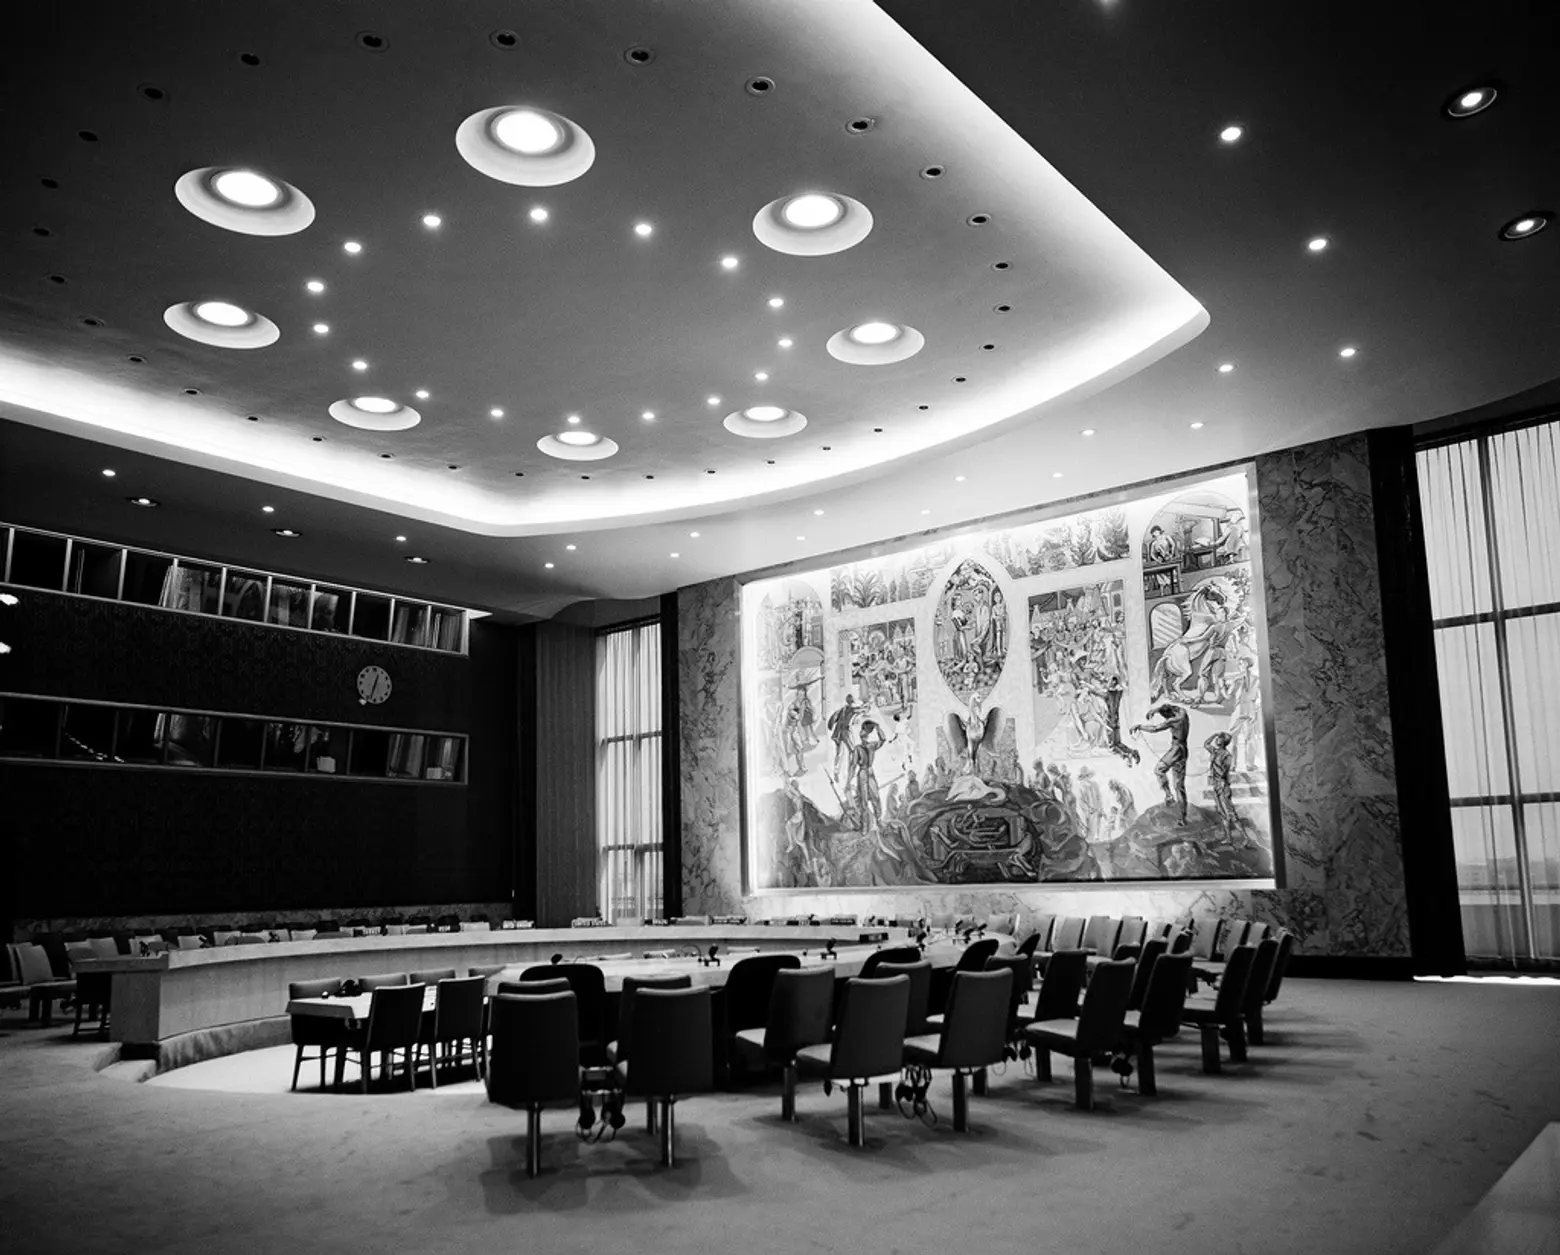 UN building, UN headquarters, nyc history